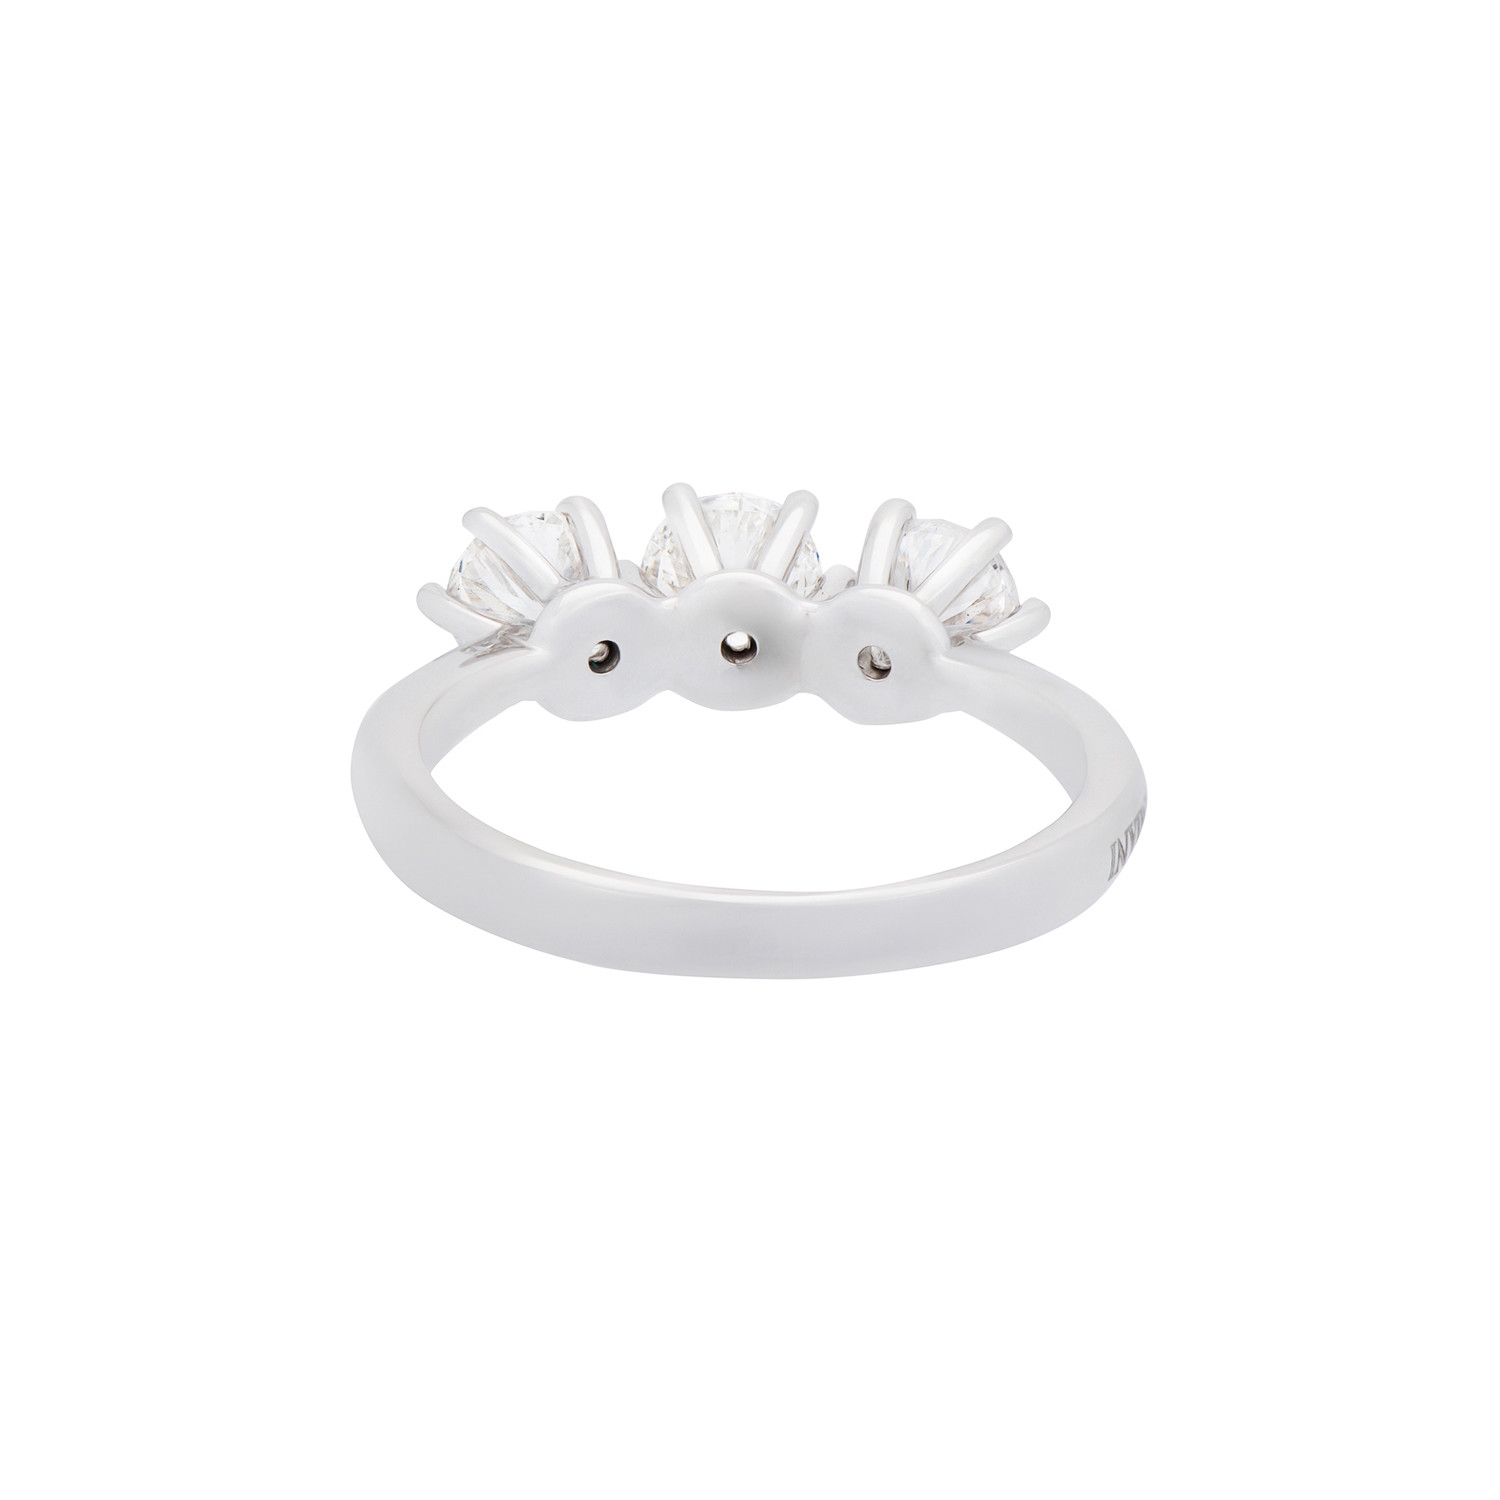 Damiani Luce 18k White Gold 3 Diamond Ring // Ring Size: 6.5 - Damiani